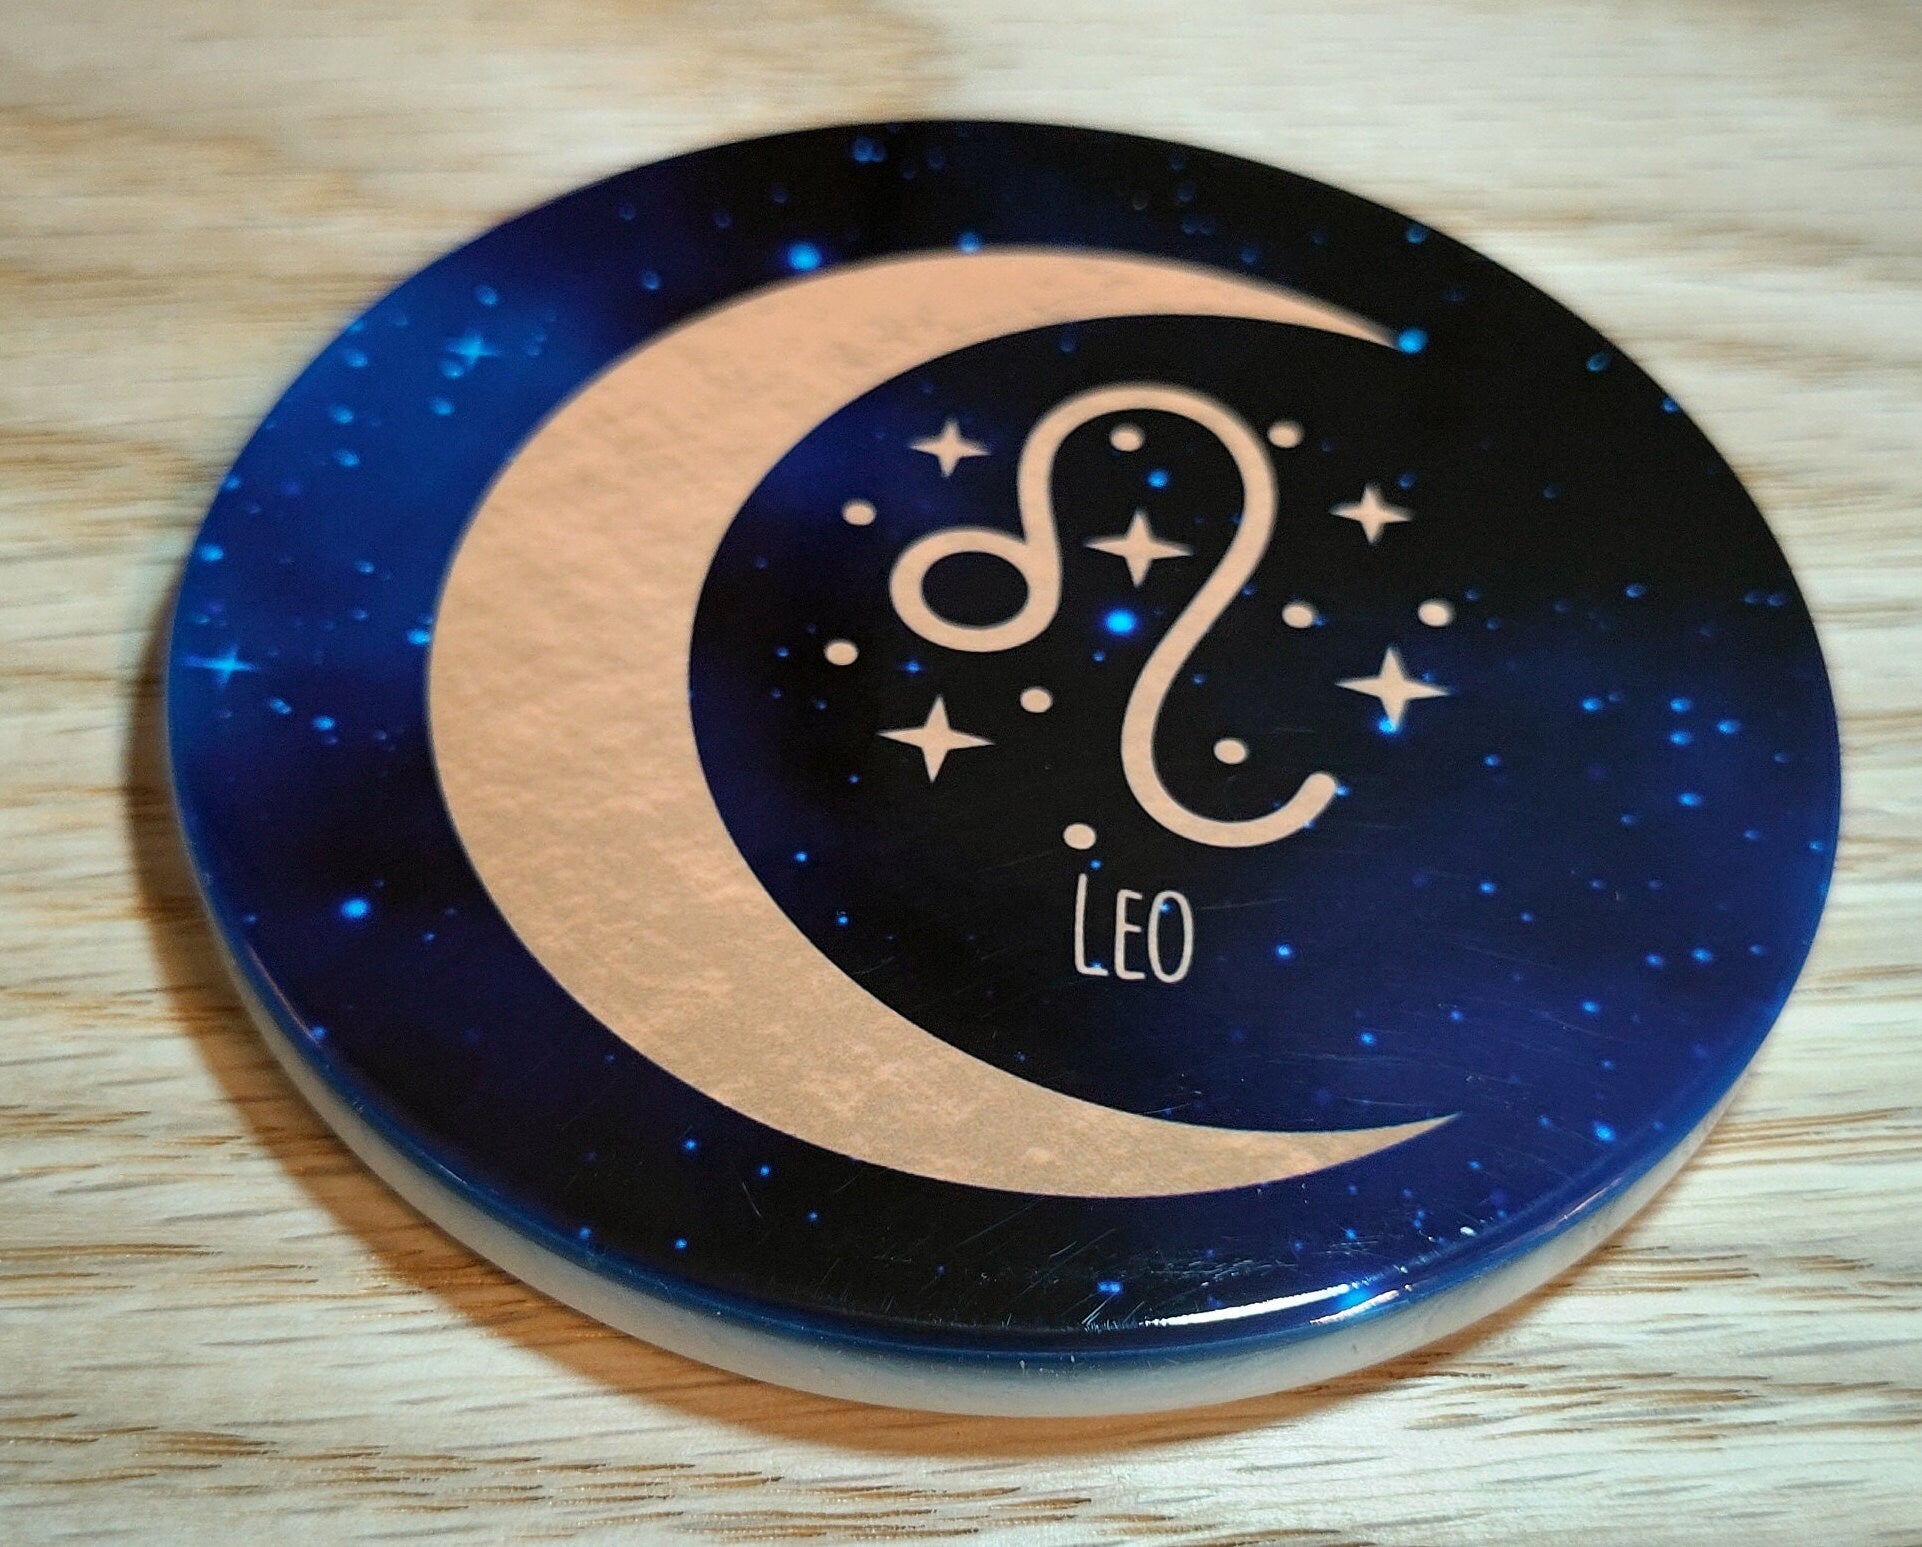 Zodiac Coasters Libra, Scorpio, Sagittarius, Capricorn, Aquarius, Pisces - Astrology. Blue Sky Aries, Taurus, Gemini, Cancer, Leo, Virgo